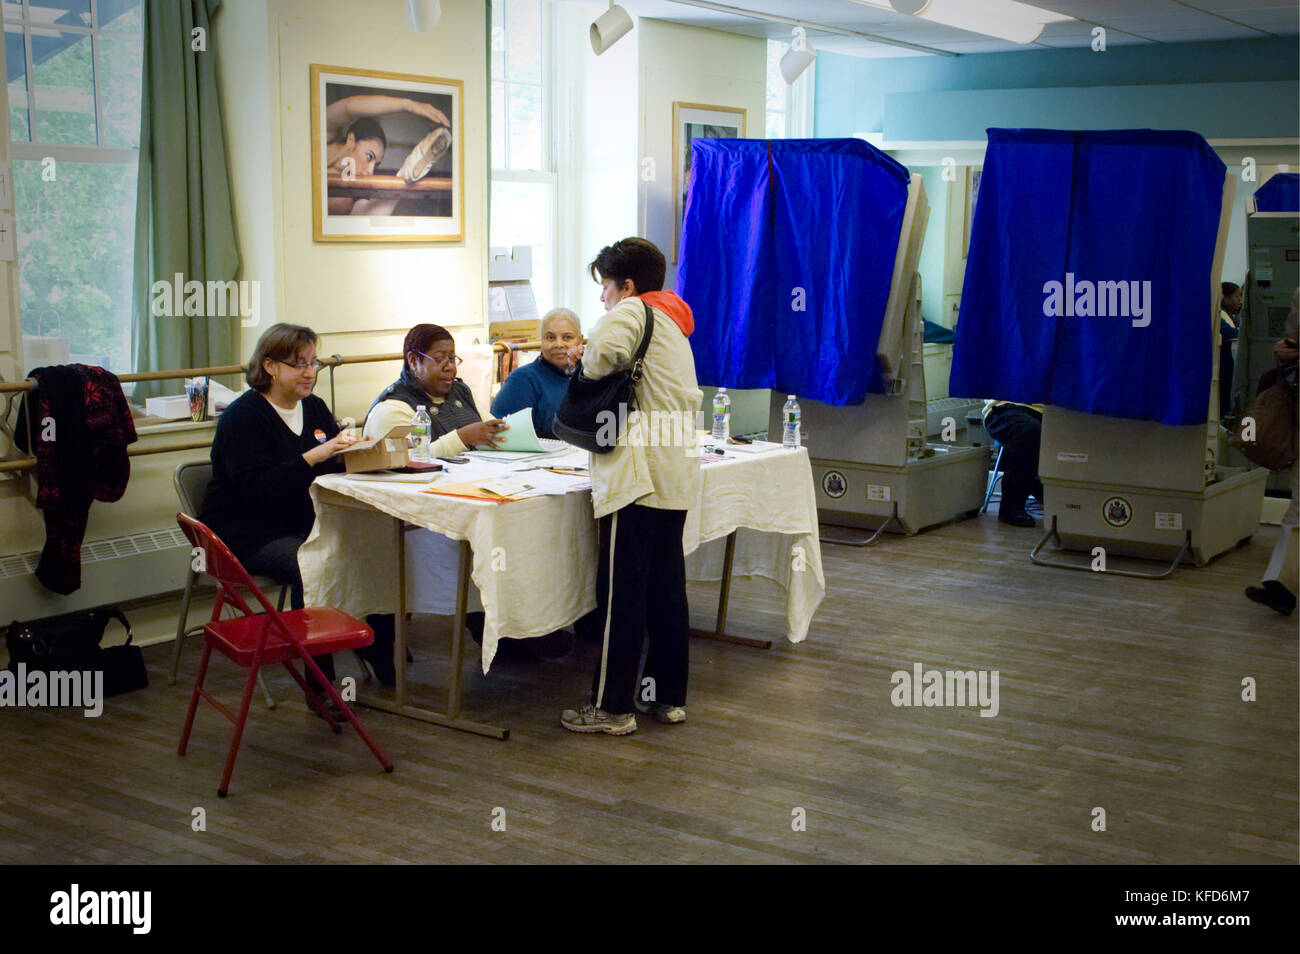 Les machines de vote électronique dans un bureau de vote de Philadelphie, PA. Banque D'Images